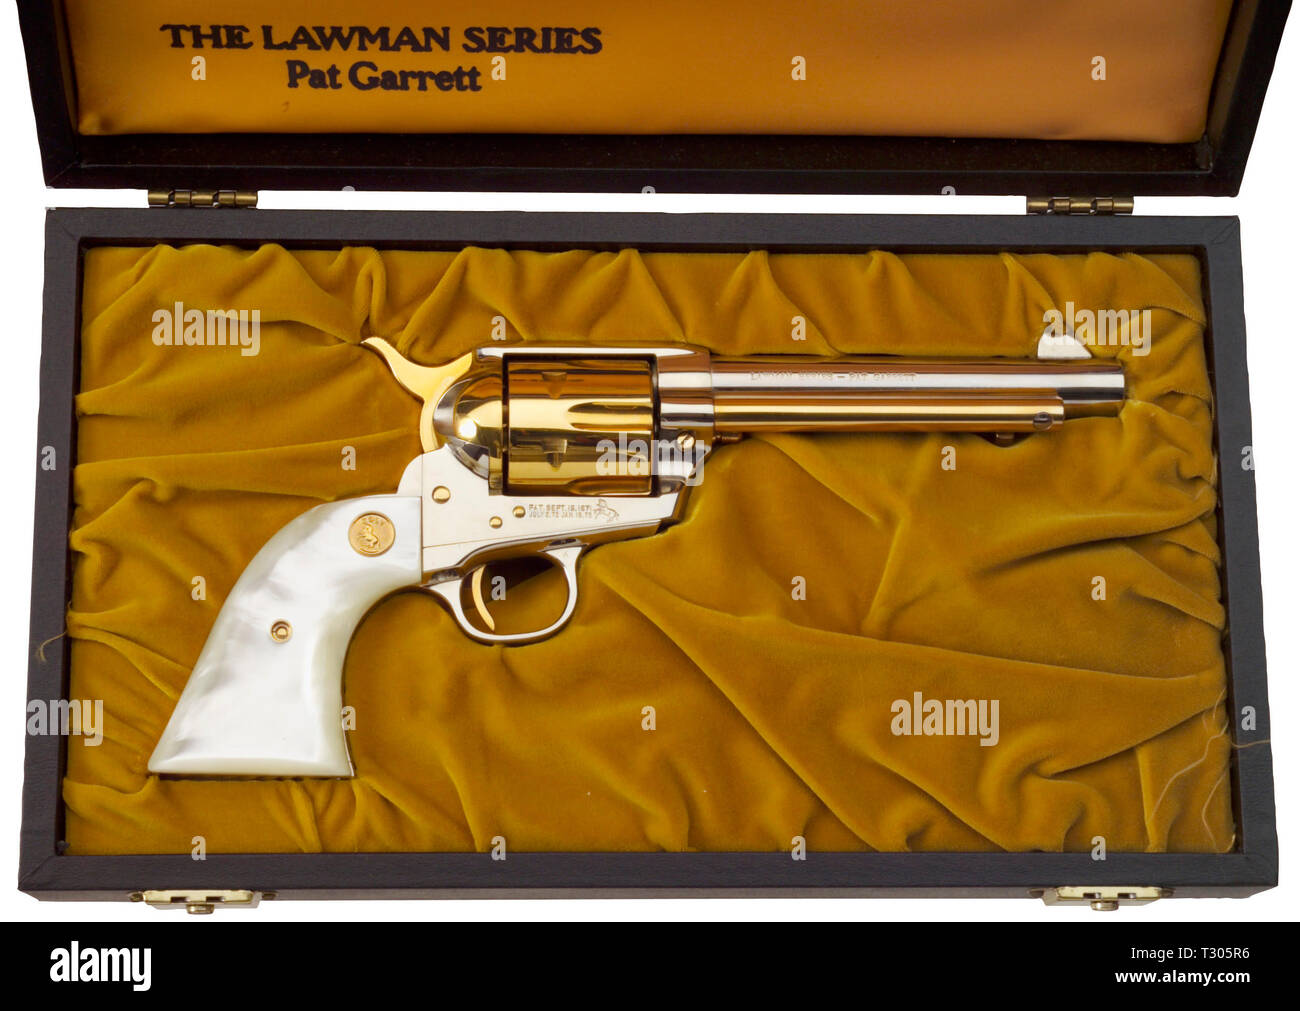 Armi di piccolo calibro, revolver Colt commemorativa, Delegati serie, Pat Garrett, 1968, calibro .45, Additional-Rights-Clearance-Info-Not-Available Foto Stock